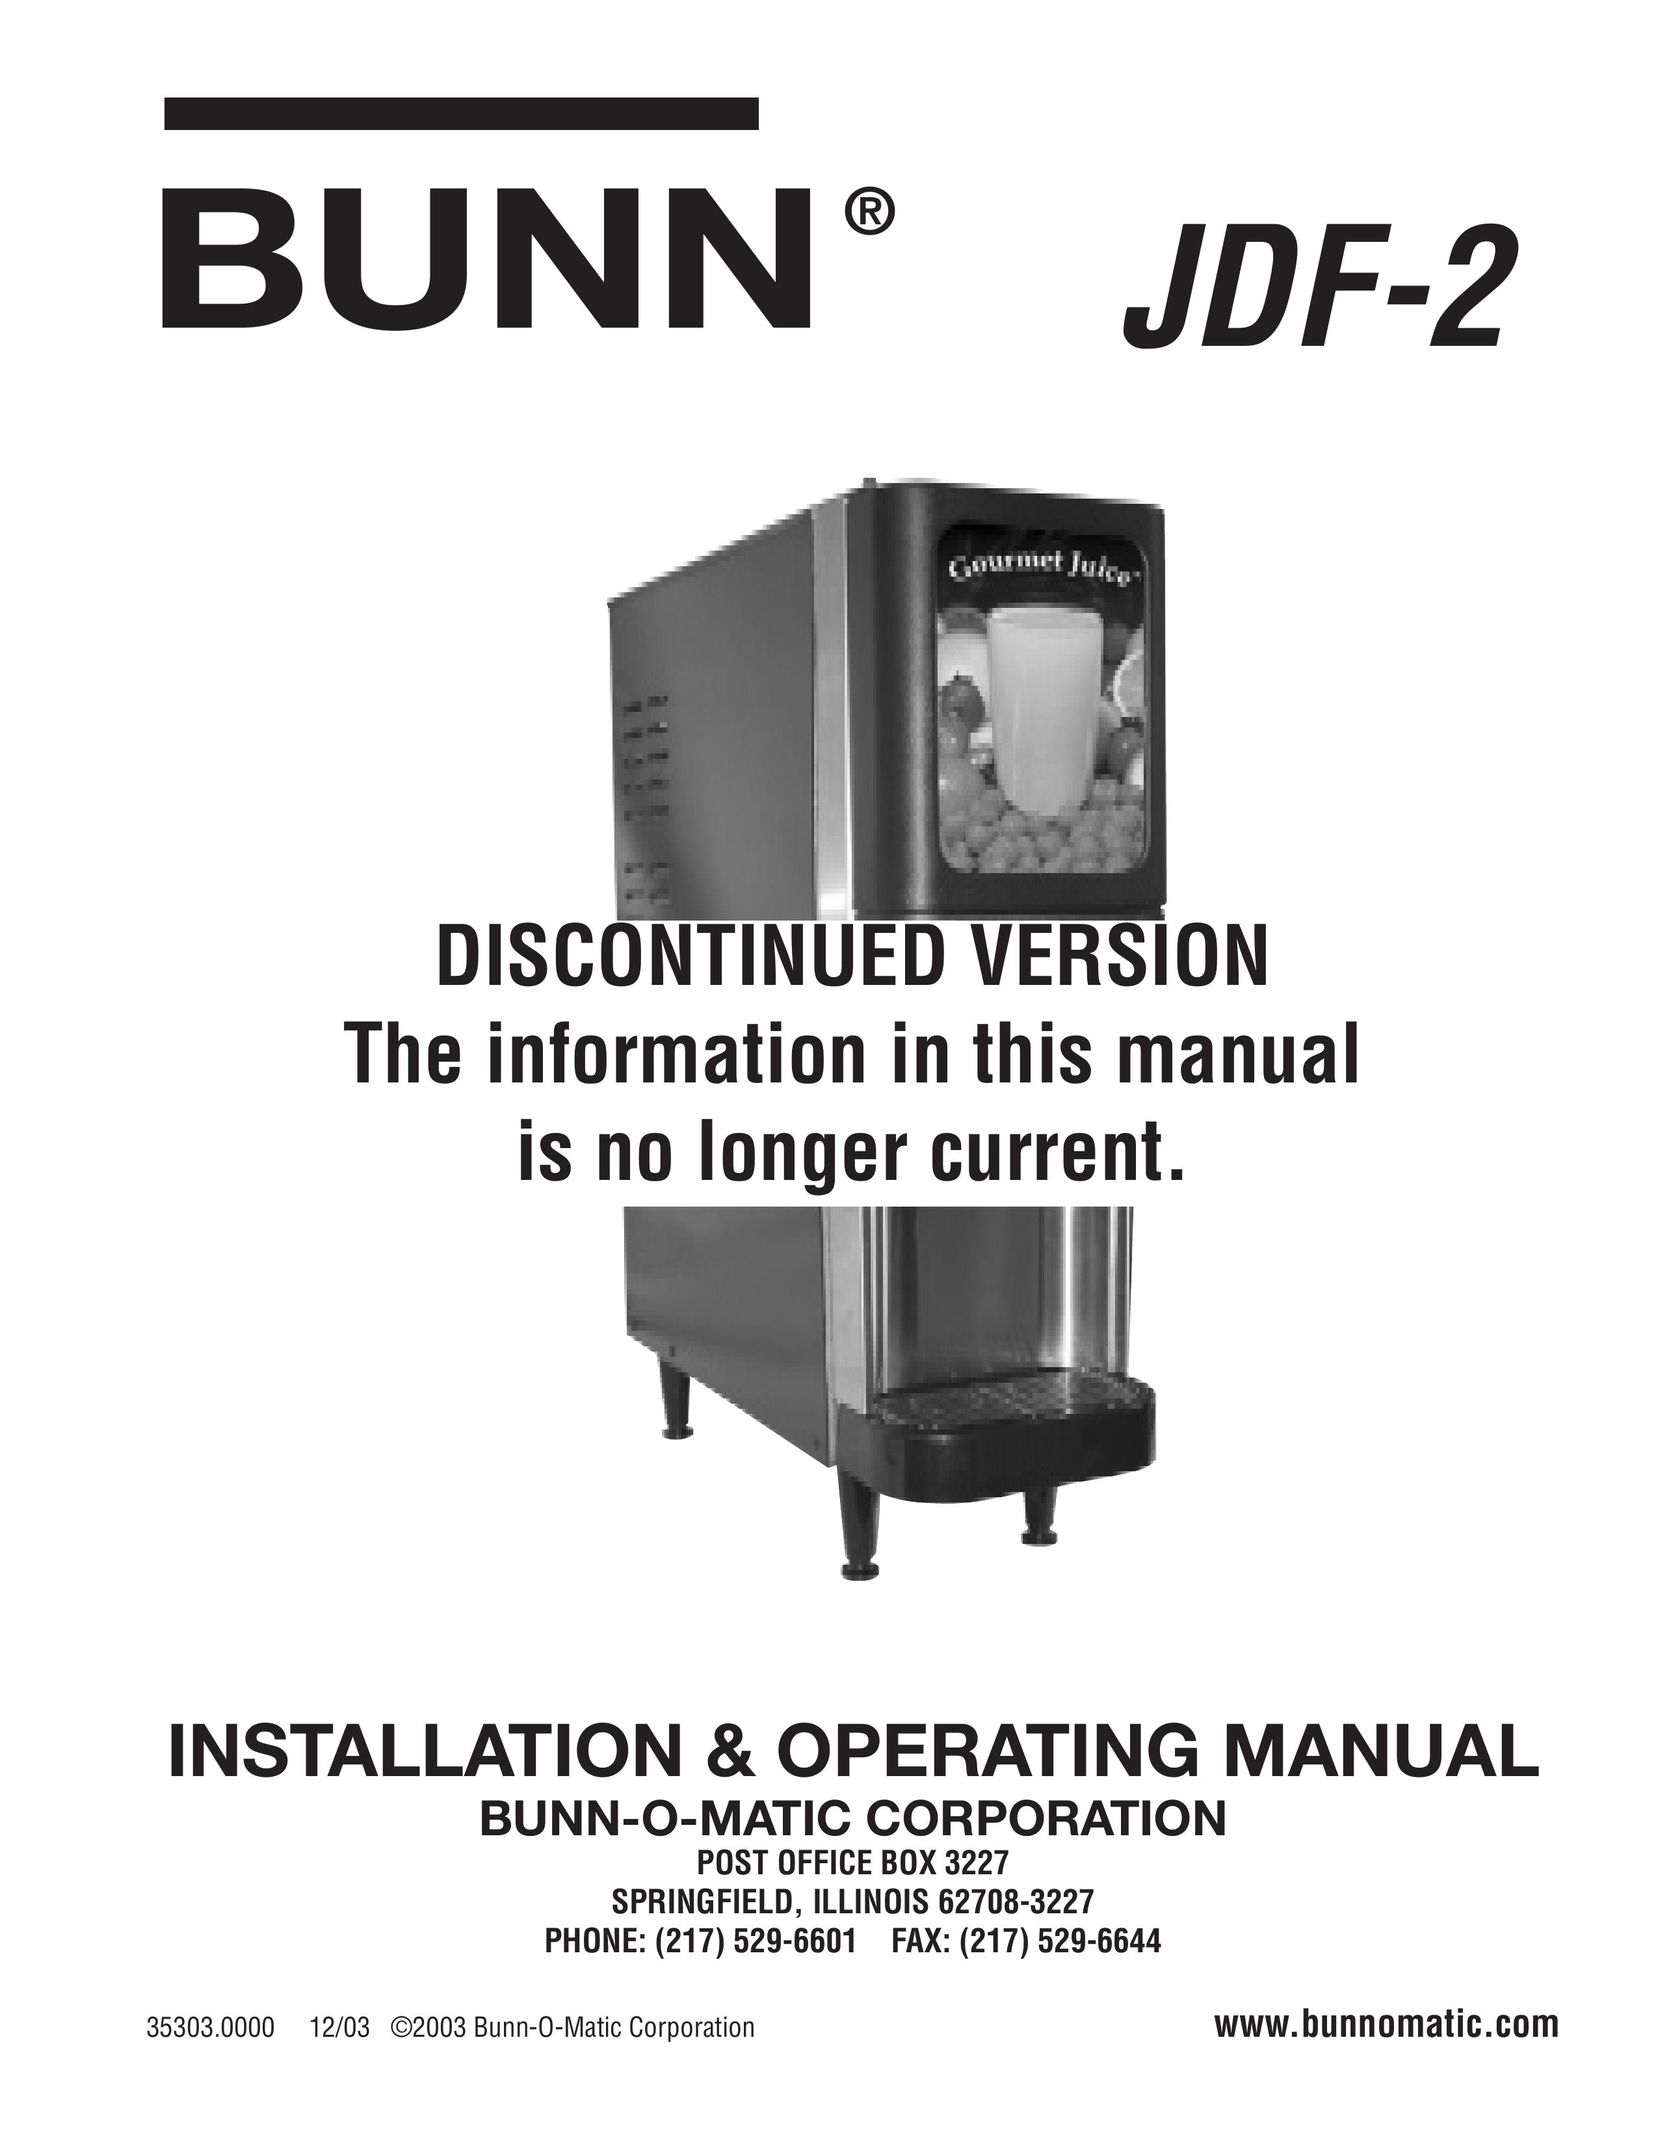 Bunn jdf-2 Juicer User Manual